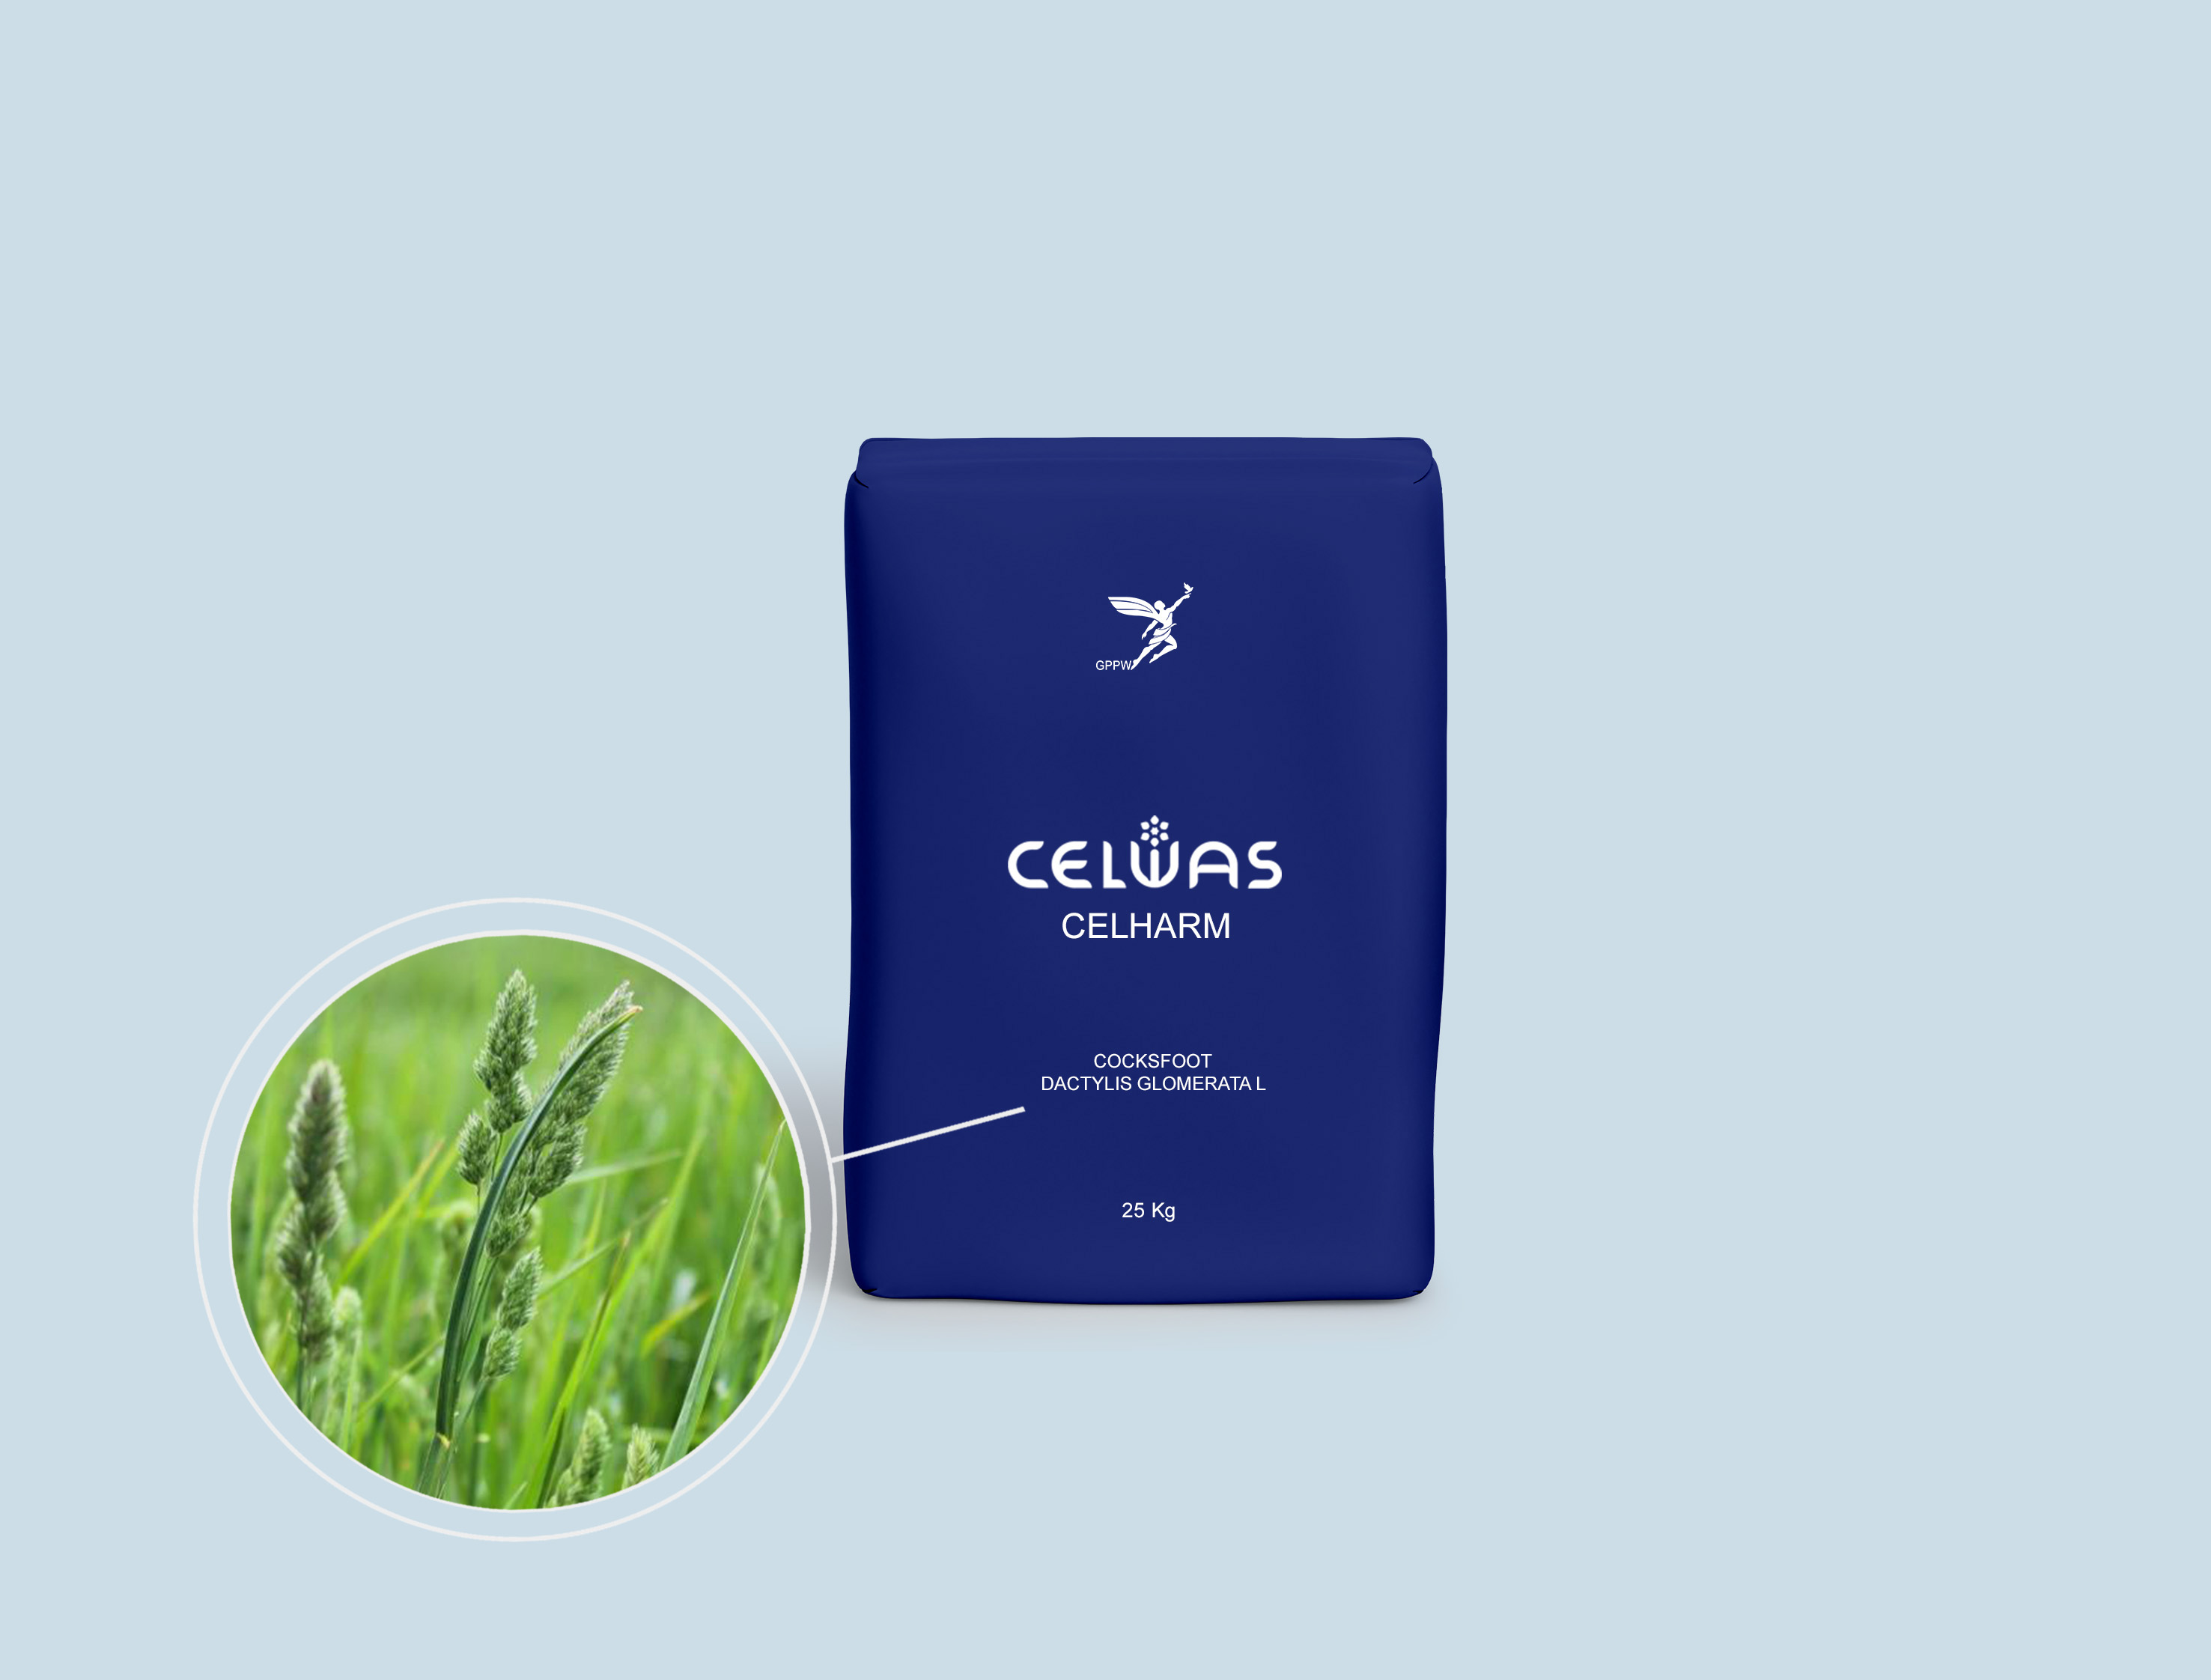 CELHARM<br />fodder grasses and legumes